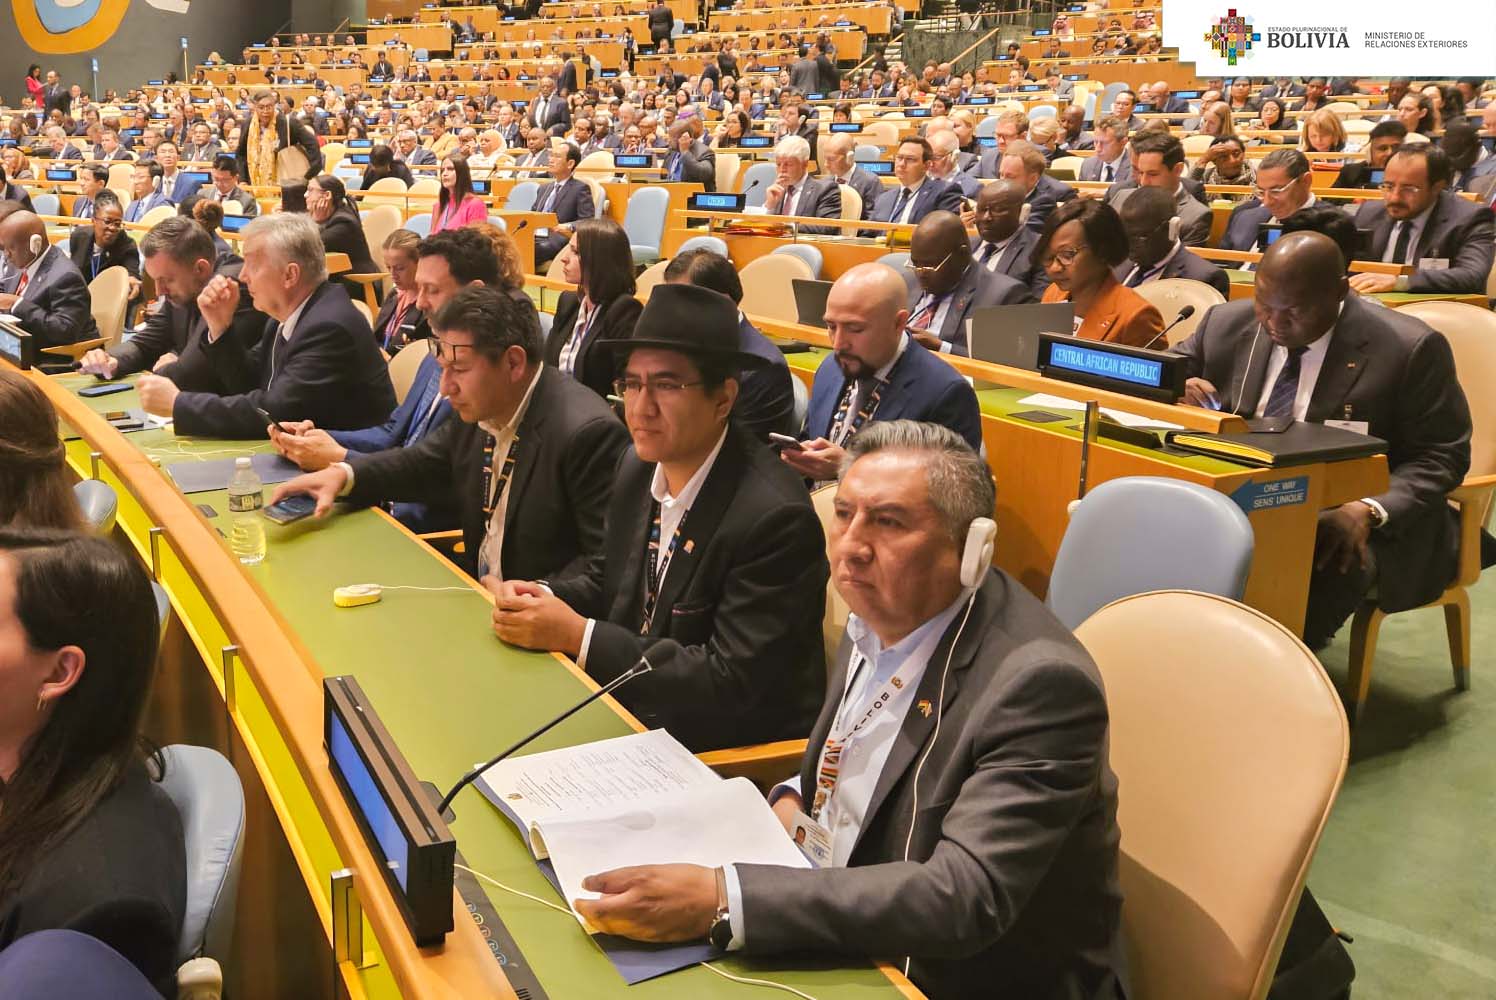 El Presidente Luis Arce y el Canciller Rogelio Mayta encabezan la delegación boliviana en el 78° periodo de sesiones de la Asamblea General de la ONU